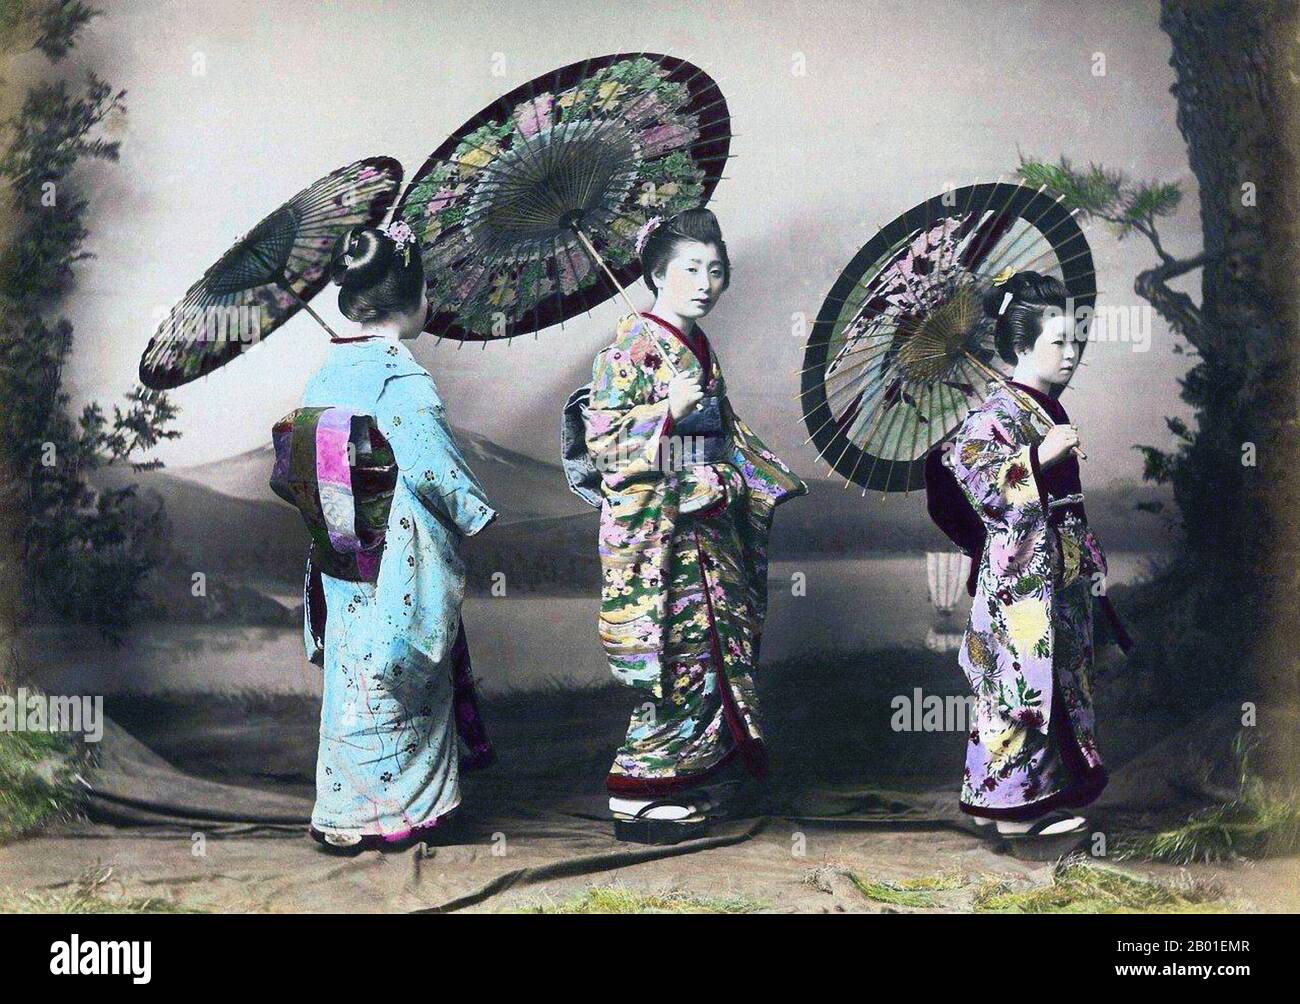 Japon: Trois Geisha posant dans un studio, Enami Nobukuni (1859-1929), c. 1905. T. Enami (Enami Nobukuni) était le nom commercial d'un célèbre photographe de l'époque Meiji. Le T. de son nom commercial est censé avoir représenté Toshi, bien qu'il ne l'ait jamais écrit sur aucun document personnel ou d'affaires. Né à Edo (aujourd'hui Tokyo) pendant l'ère Bakumatsu, Enami a d'abord été étudiant, puis assistant du célèbre photographe et collectionniste, Ogawa Kazumasa. Enami a déménagé à Yokohama, et a ouvert un studio sur Benten-dōri (rue Benten) en 1892. Banque D'Images